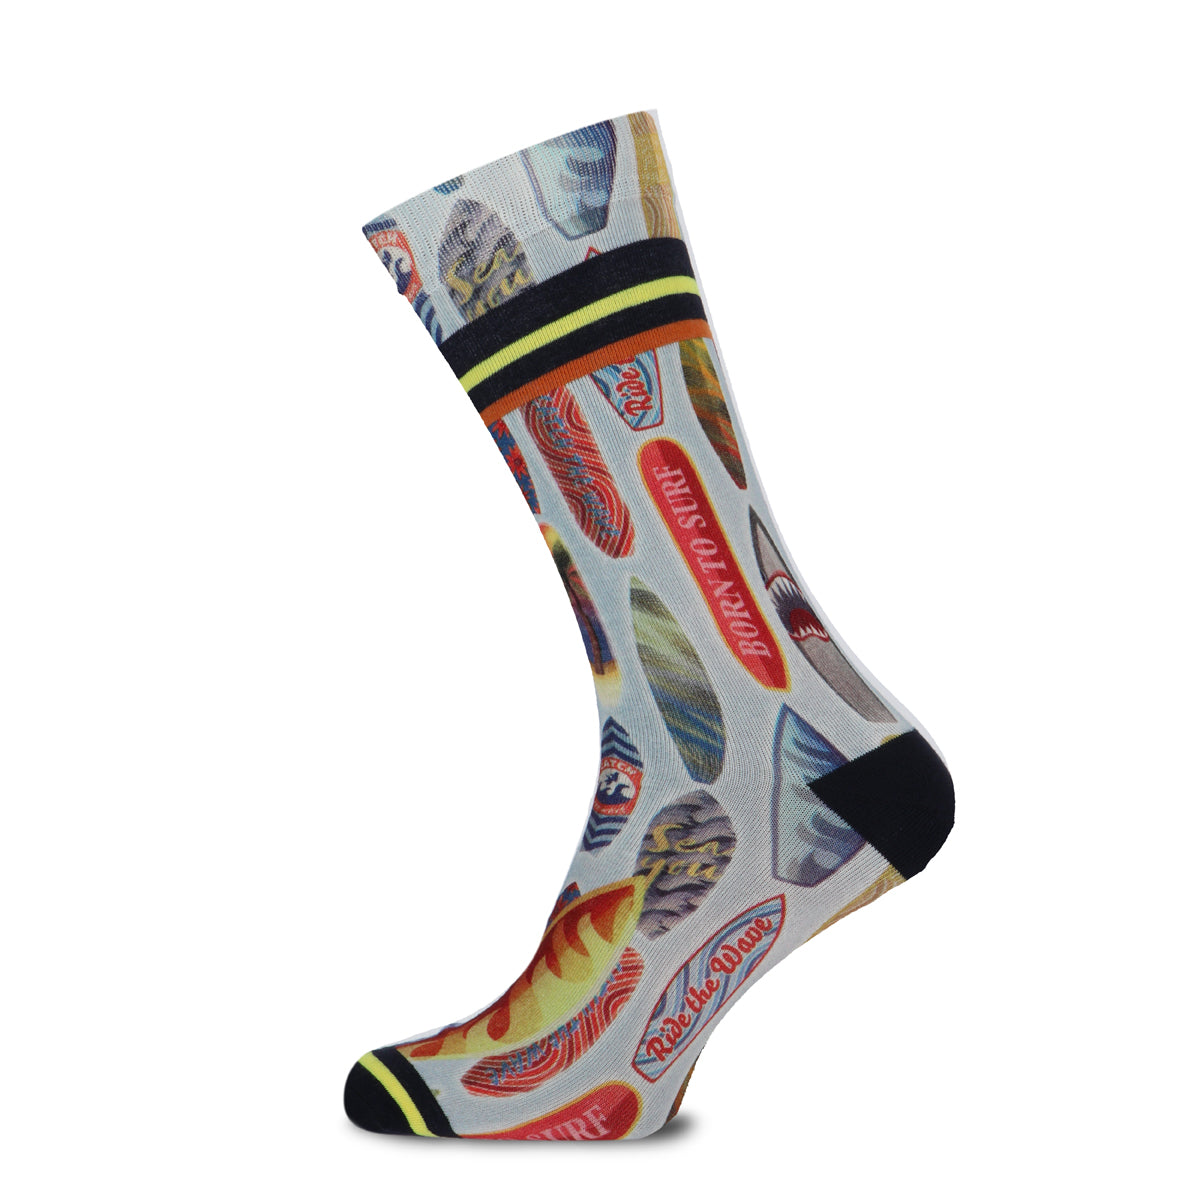 Xpooos & ADNF Surfboards Bamboo men's socks